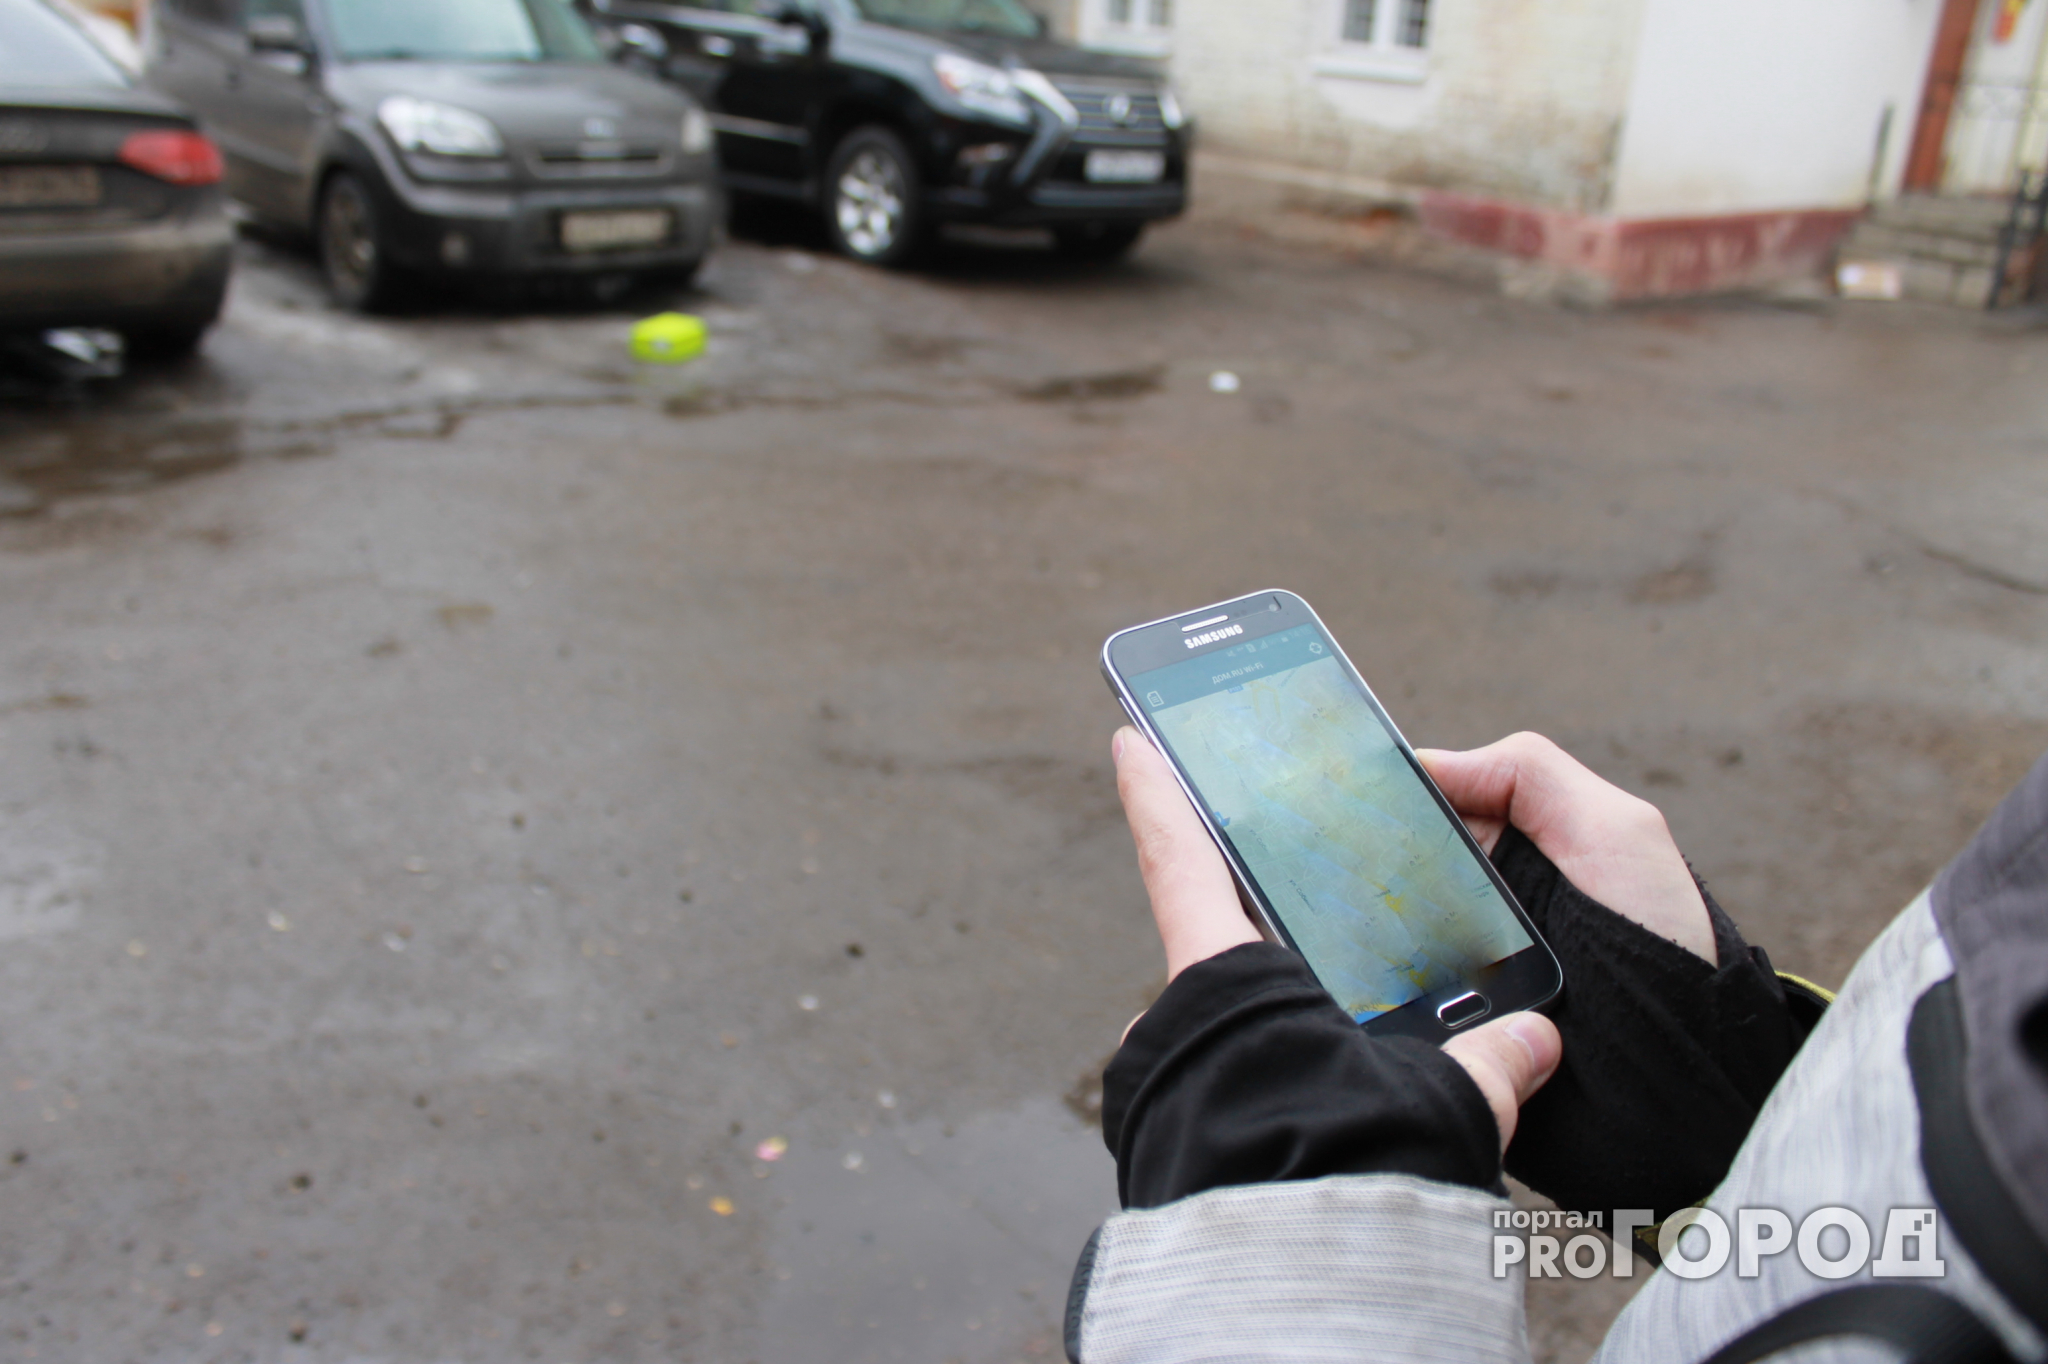 Чебоксарский таксист нашел в машине чужой телефон и воспользовался мобильным банком